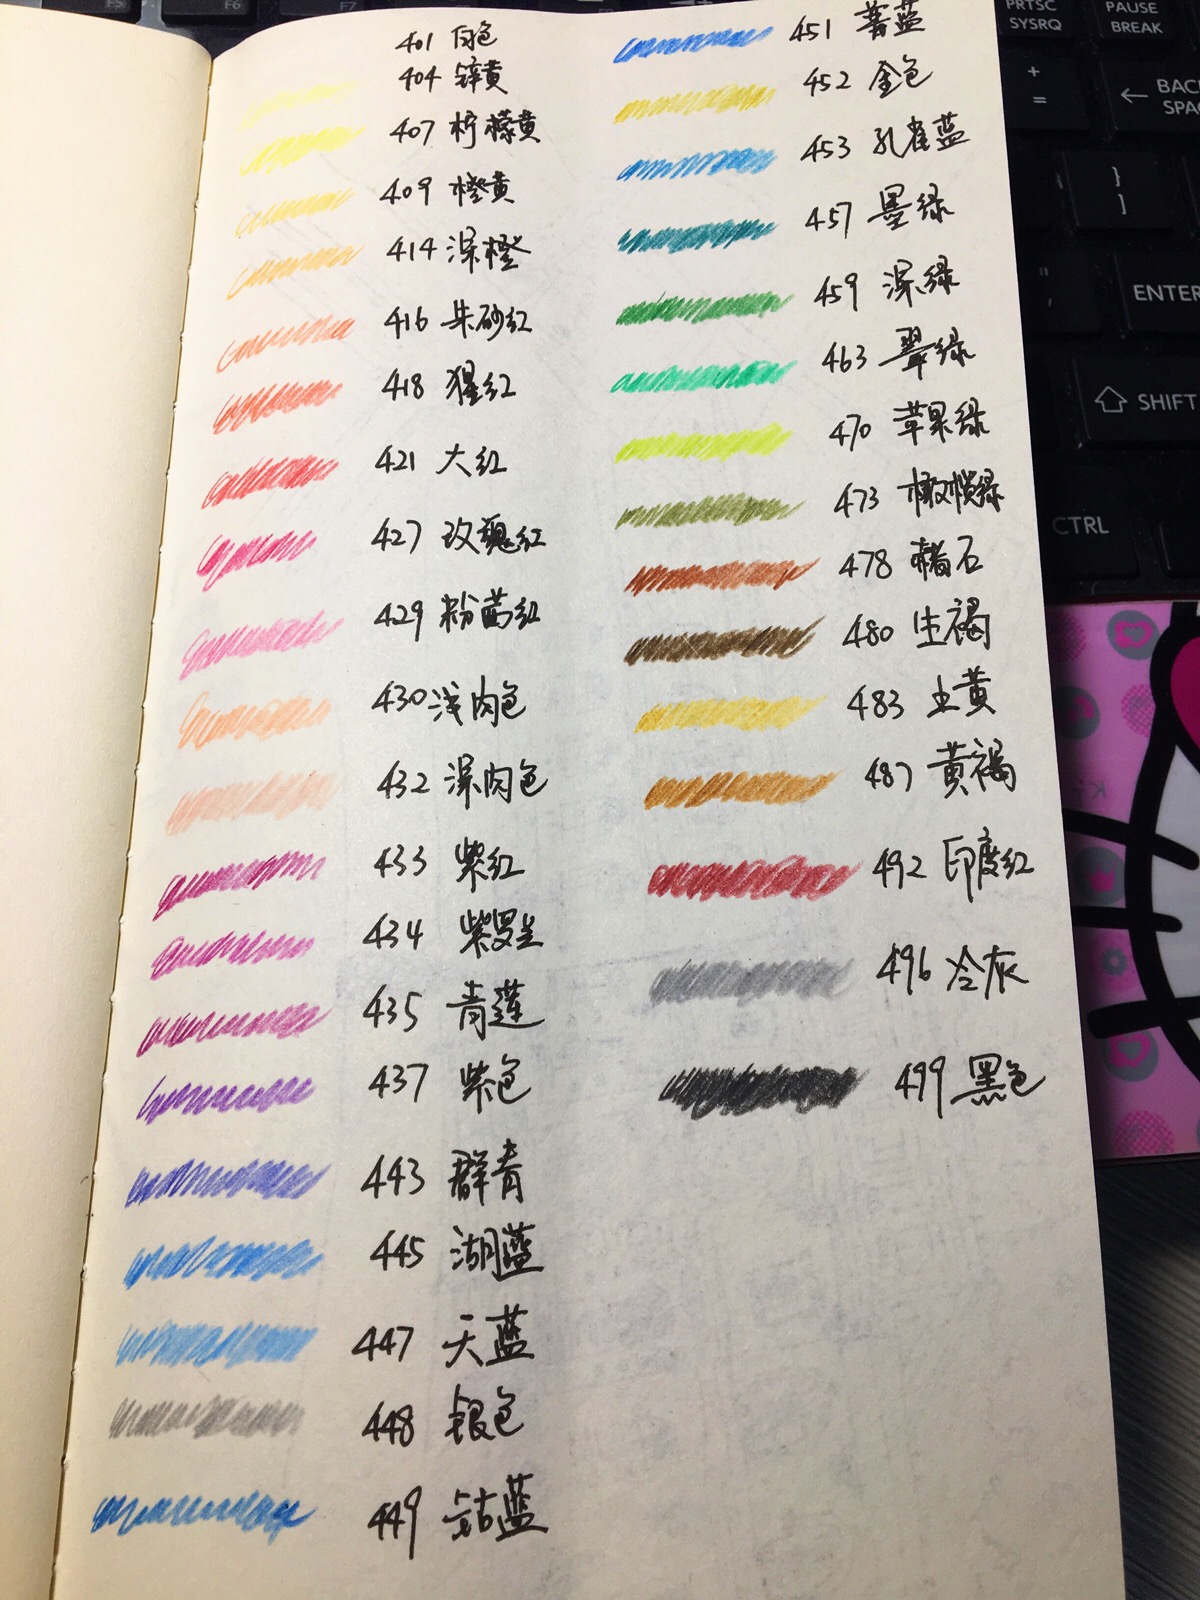 辉柏嘉水溶性彩铅36色试色,争取年底前用完它们,那就换72色的[奋斗]等